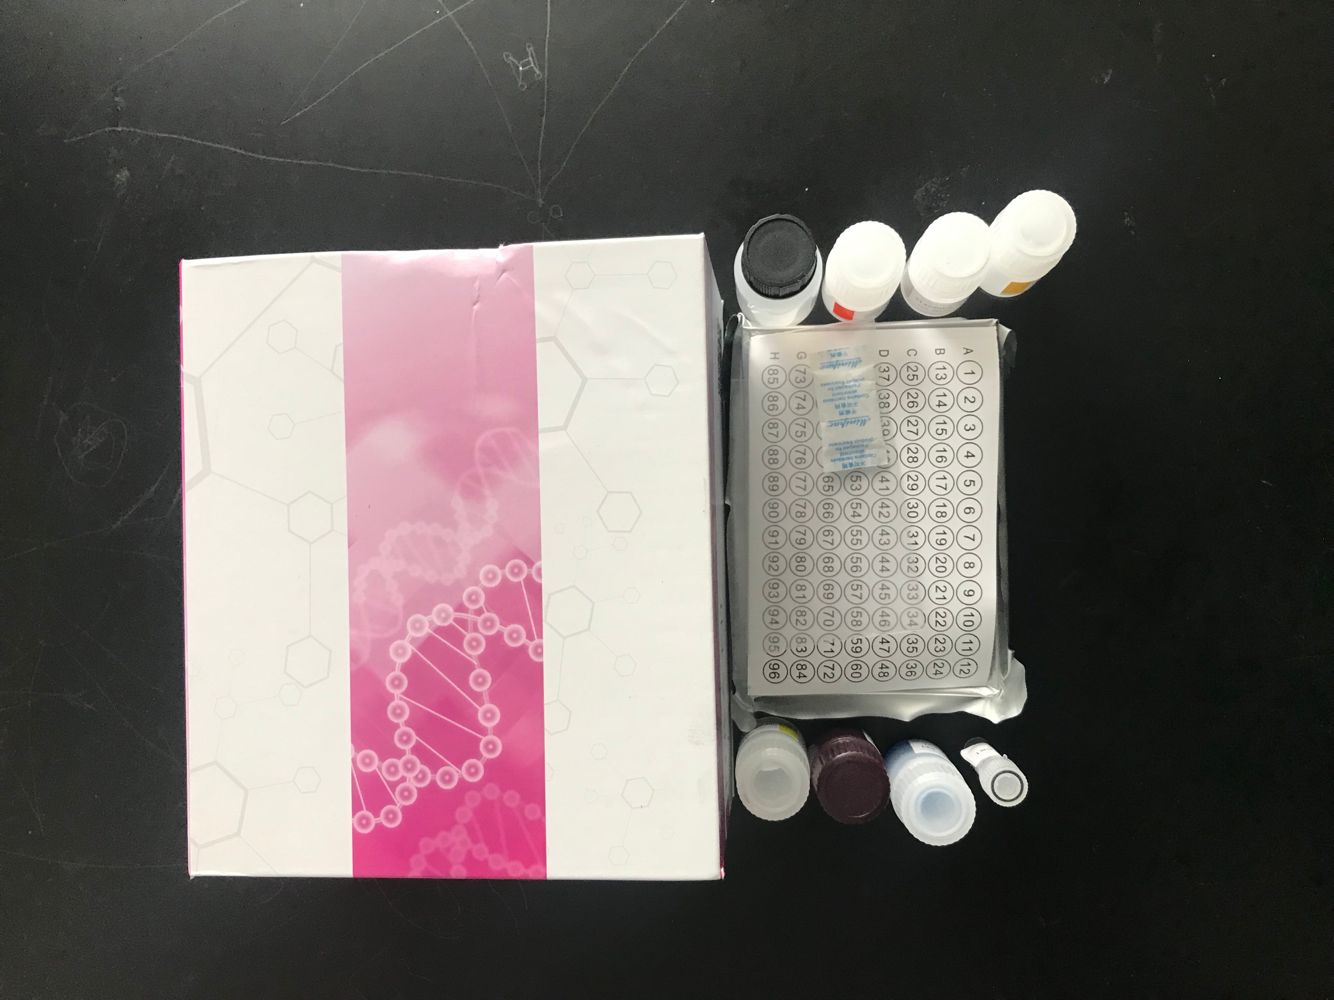 性激素结合球蛋白检测试剂盒进口试剂